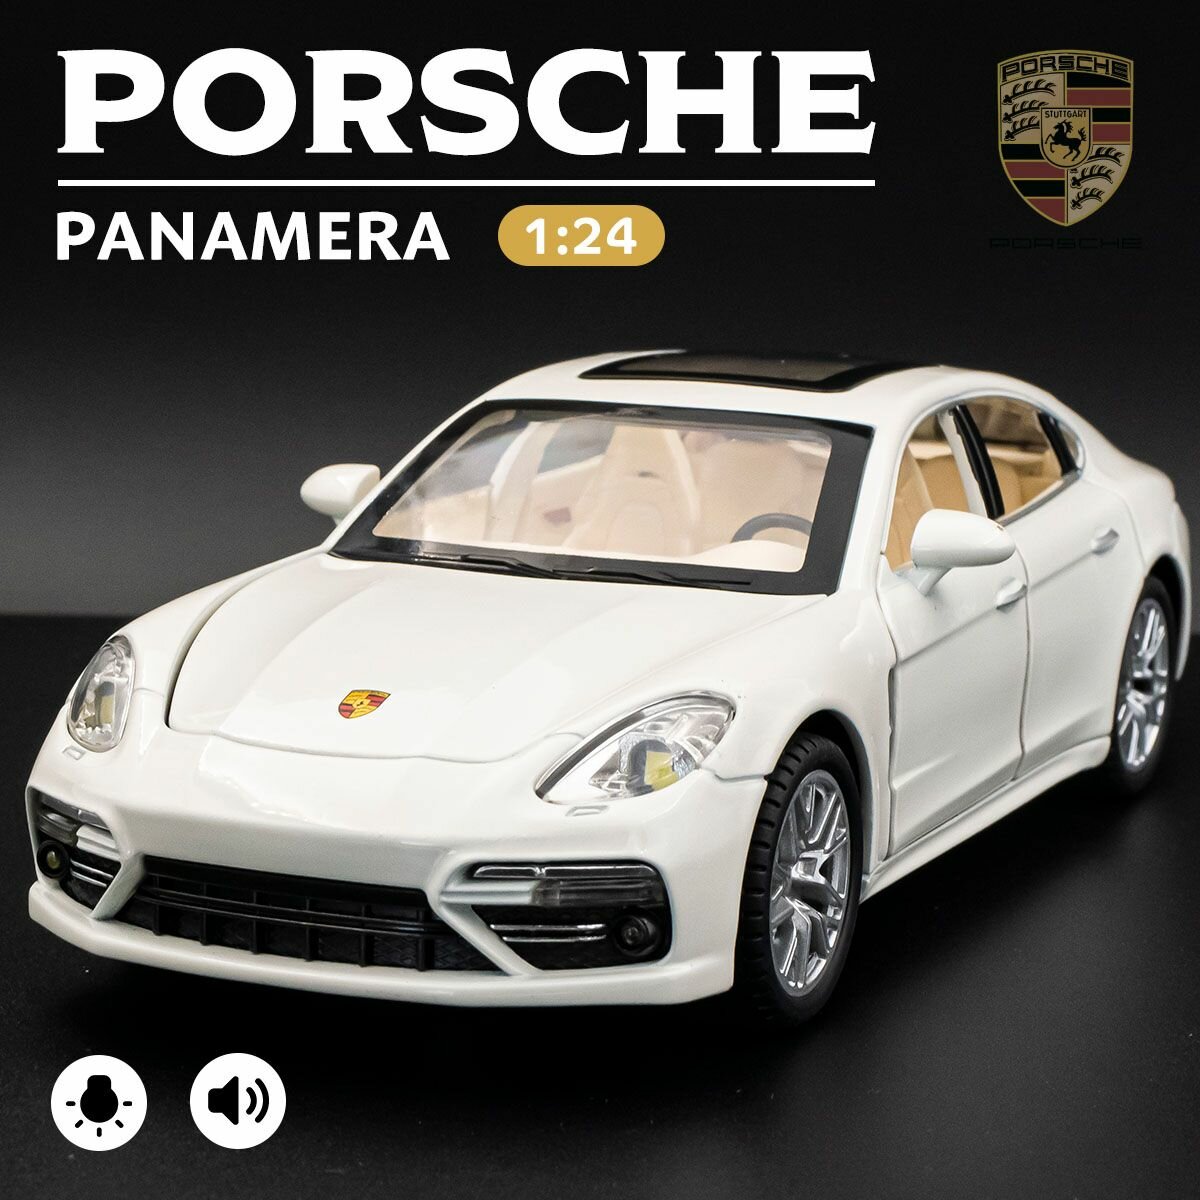 Детская машинка Porsche Panamera 1:24 модель машины Порше Панамера